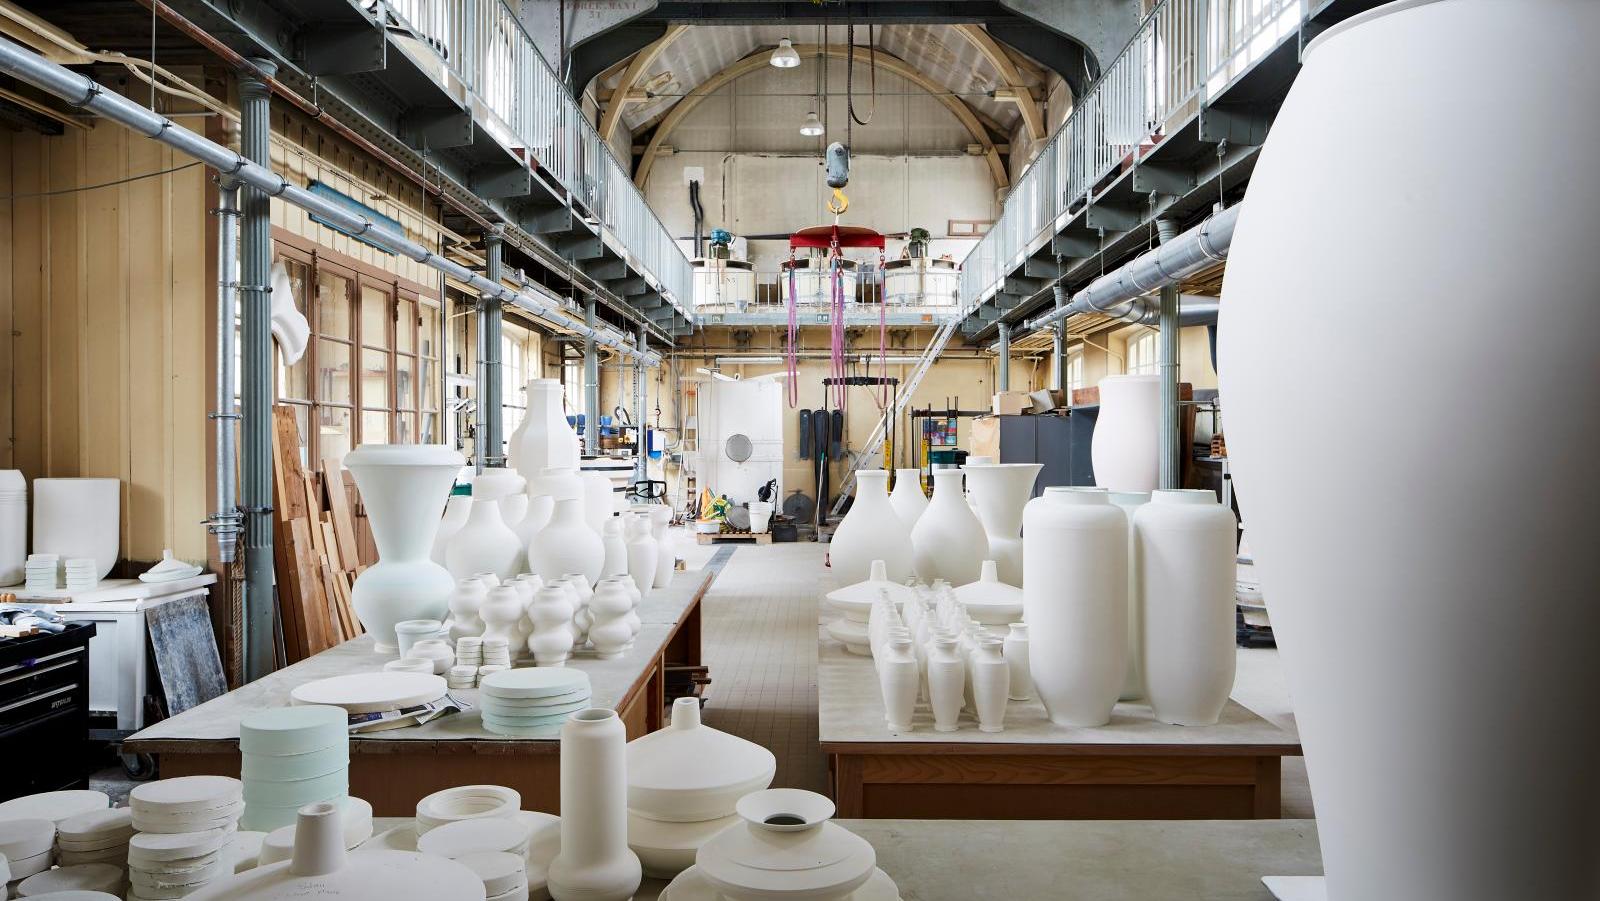 Large scale casting workshop© Lorenz Cugini / Sèvres - Manufacture et Musée nati... Sèvres Porcelain: An Illustrious History and Vibrant Present 